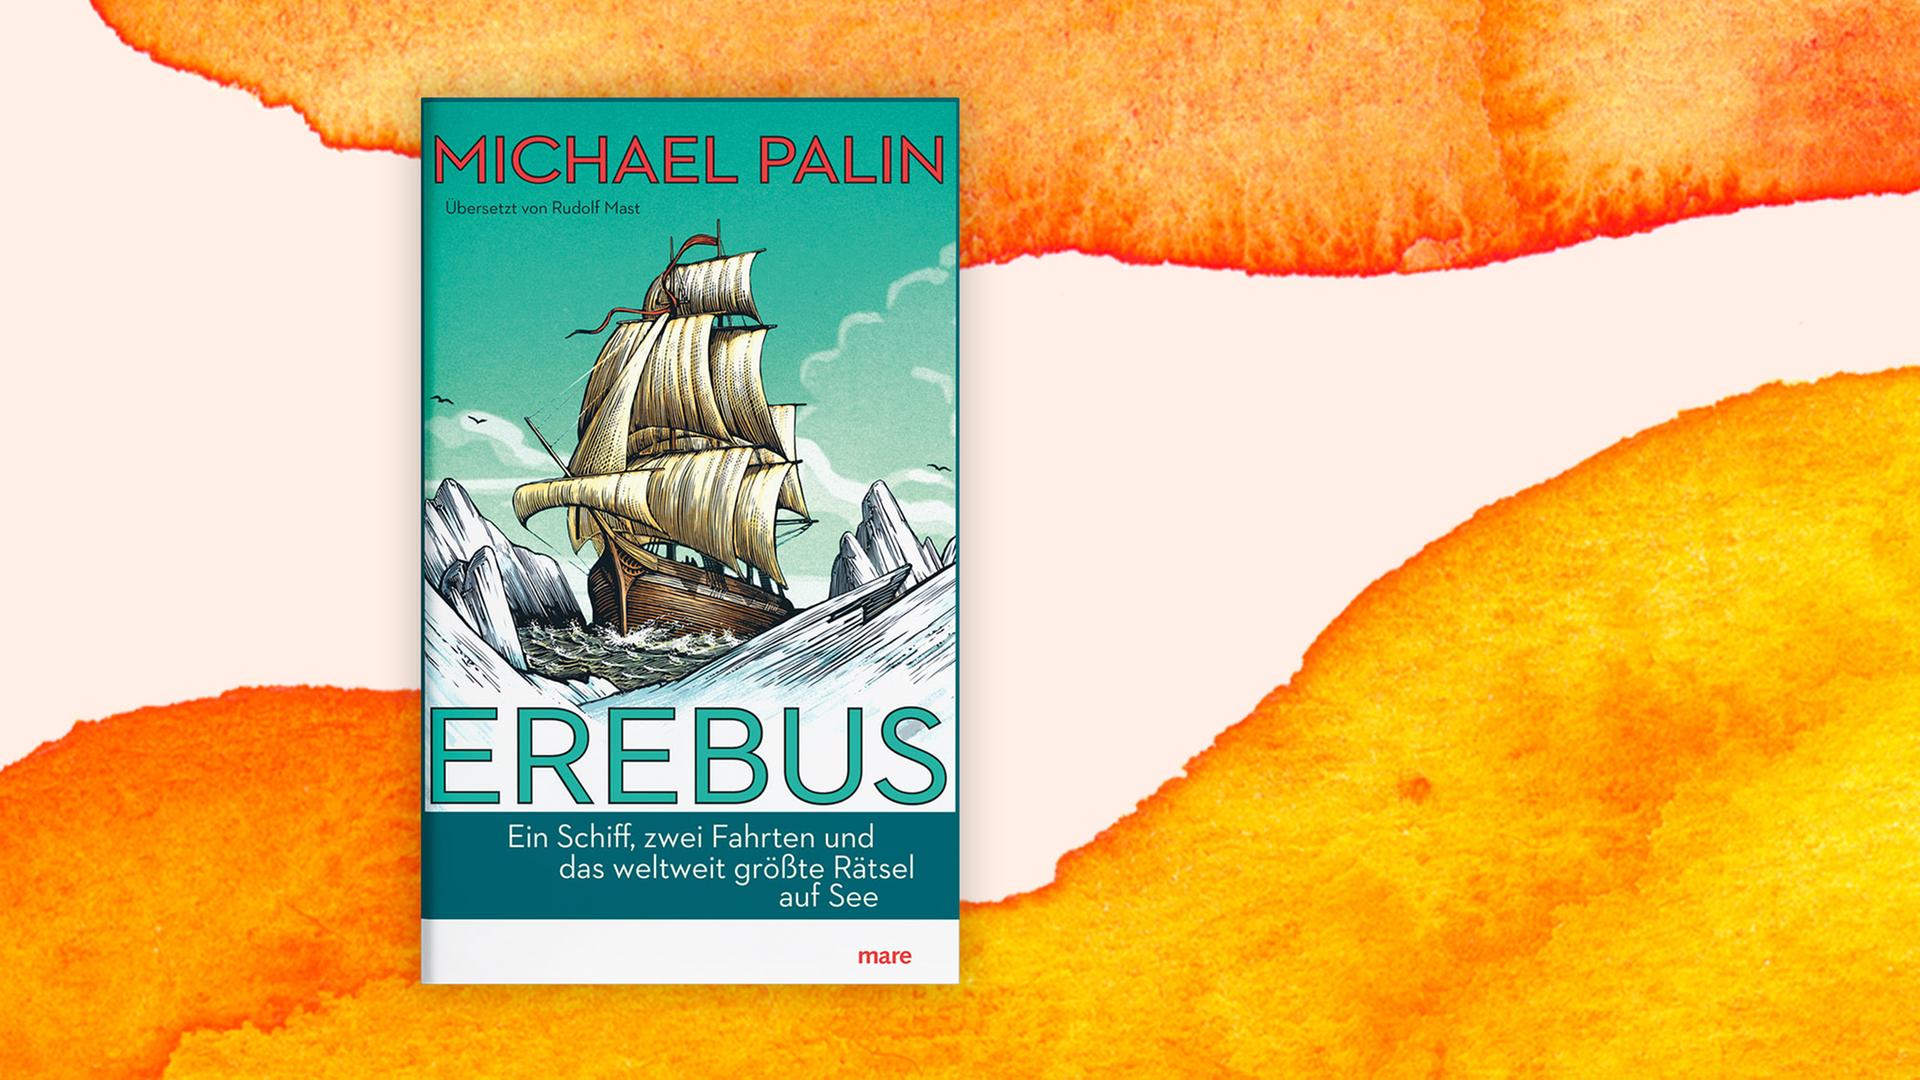 Das Cover von Michael Palin - "Erebus" auf weiß-orangenem Hintergrund. Das Cover zeigt eine Zeichnung eines Segelschiffs zwischen Eisbergen.